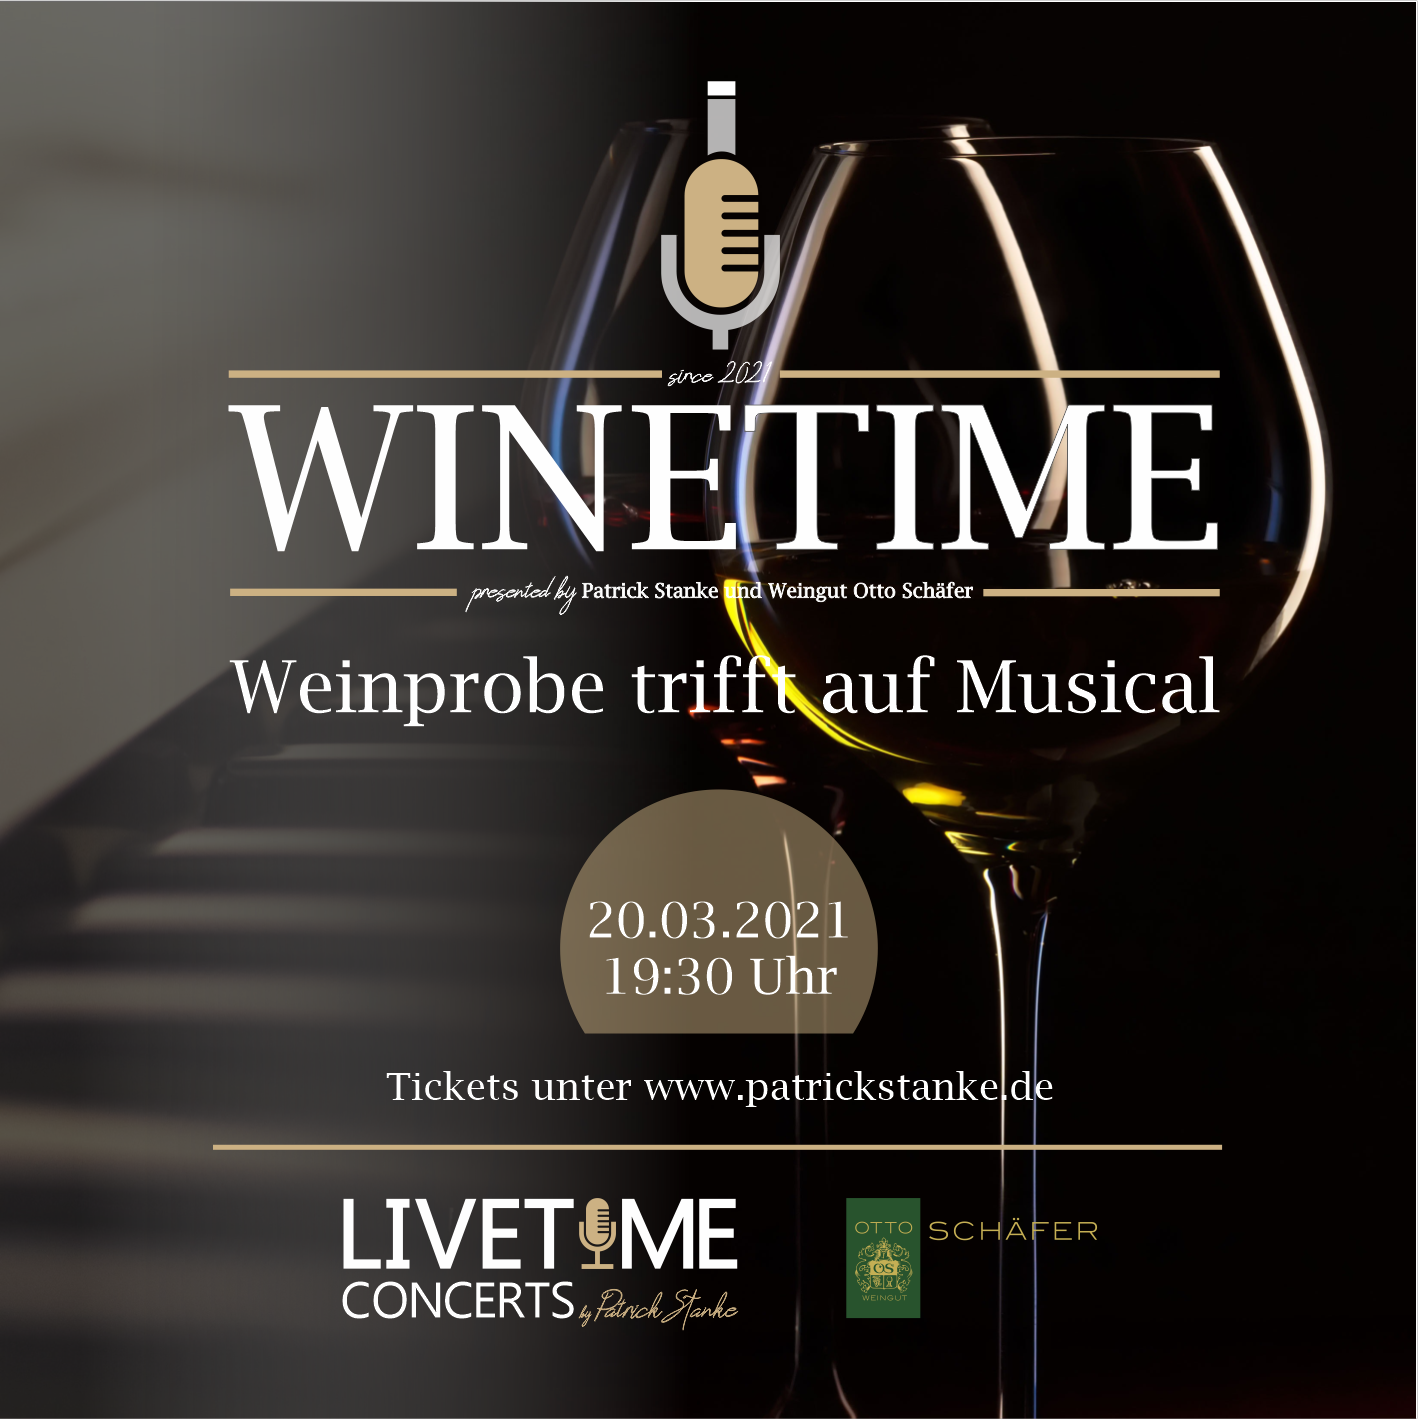 WINETIME - Weinprobe trifft auf Musical